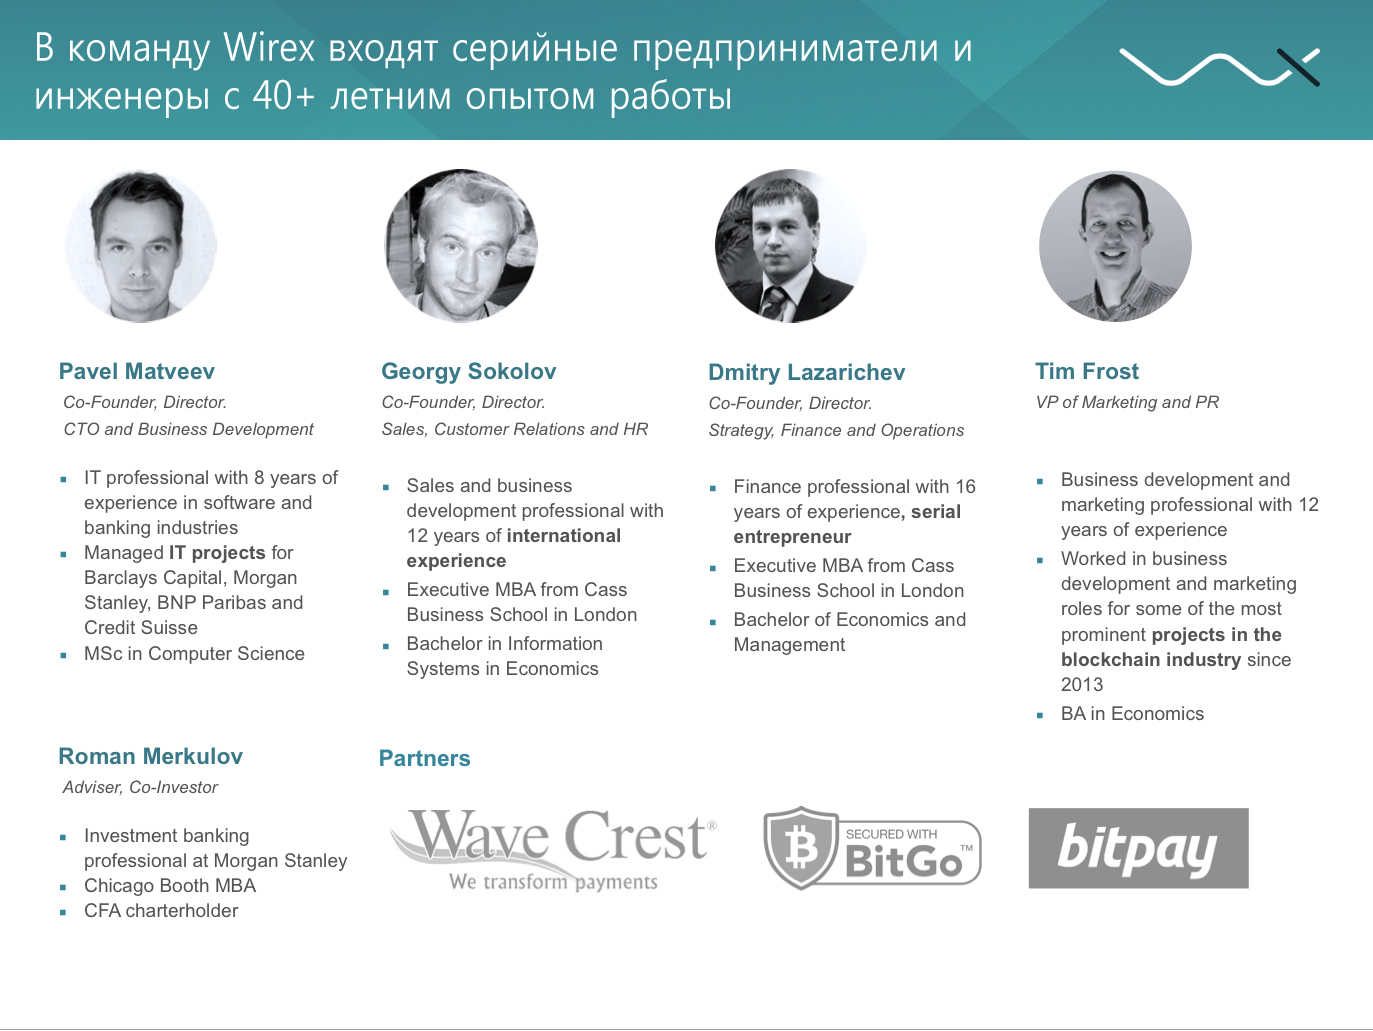 Платформа Wirex: новый шаг в развитии финансовых услуг - 6